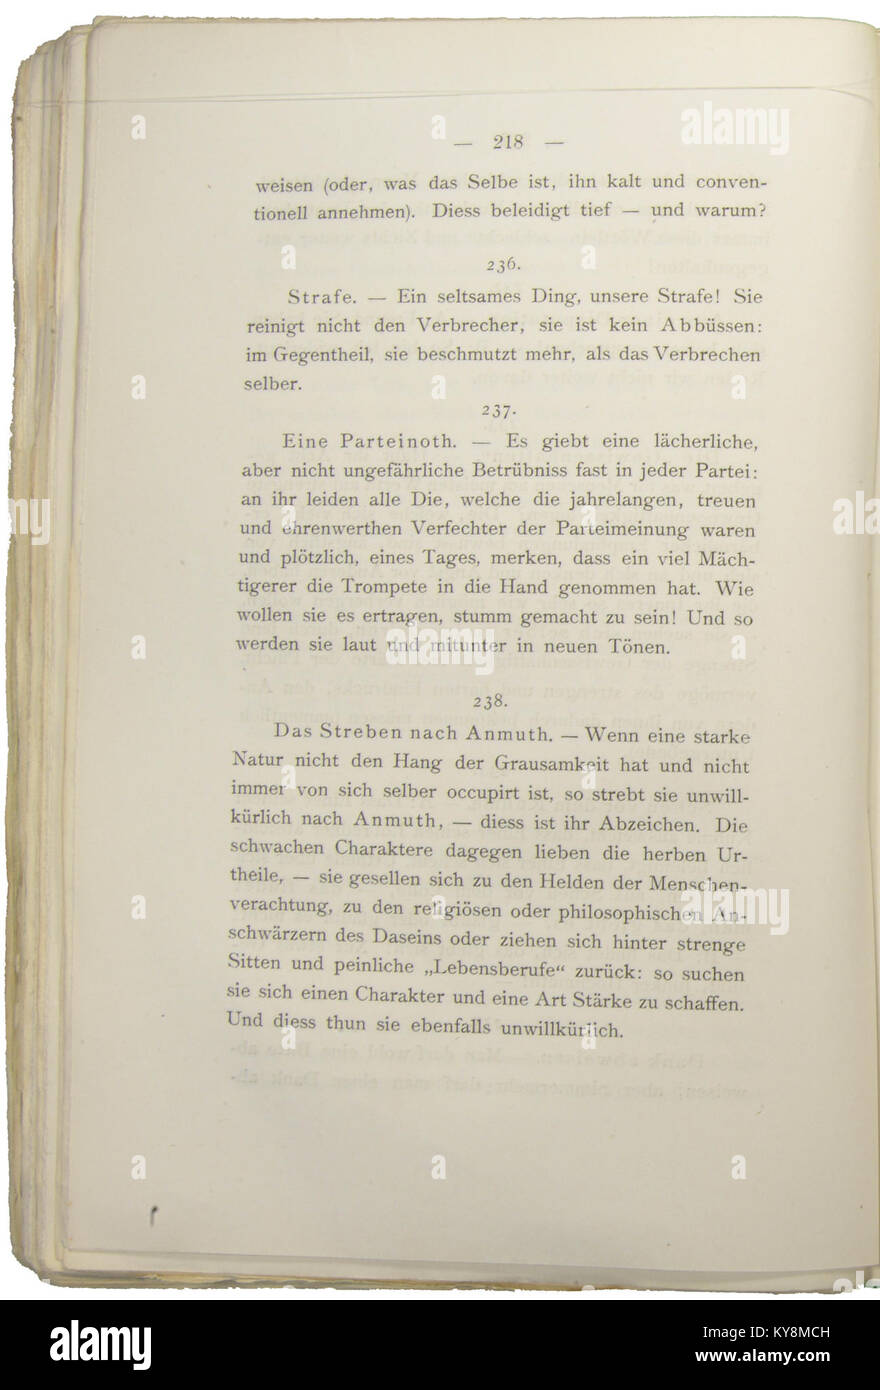 Nietzsche - Morgenröthe, 1881, p. 218 Stock Photo